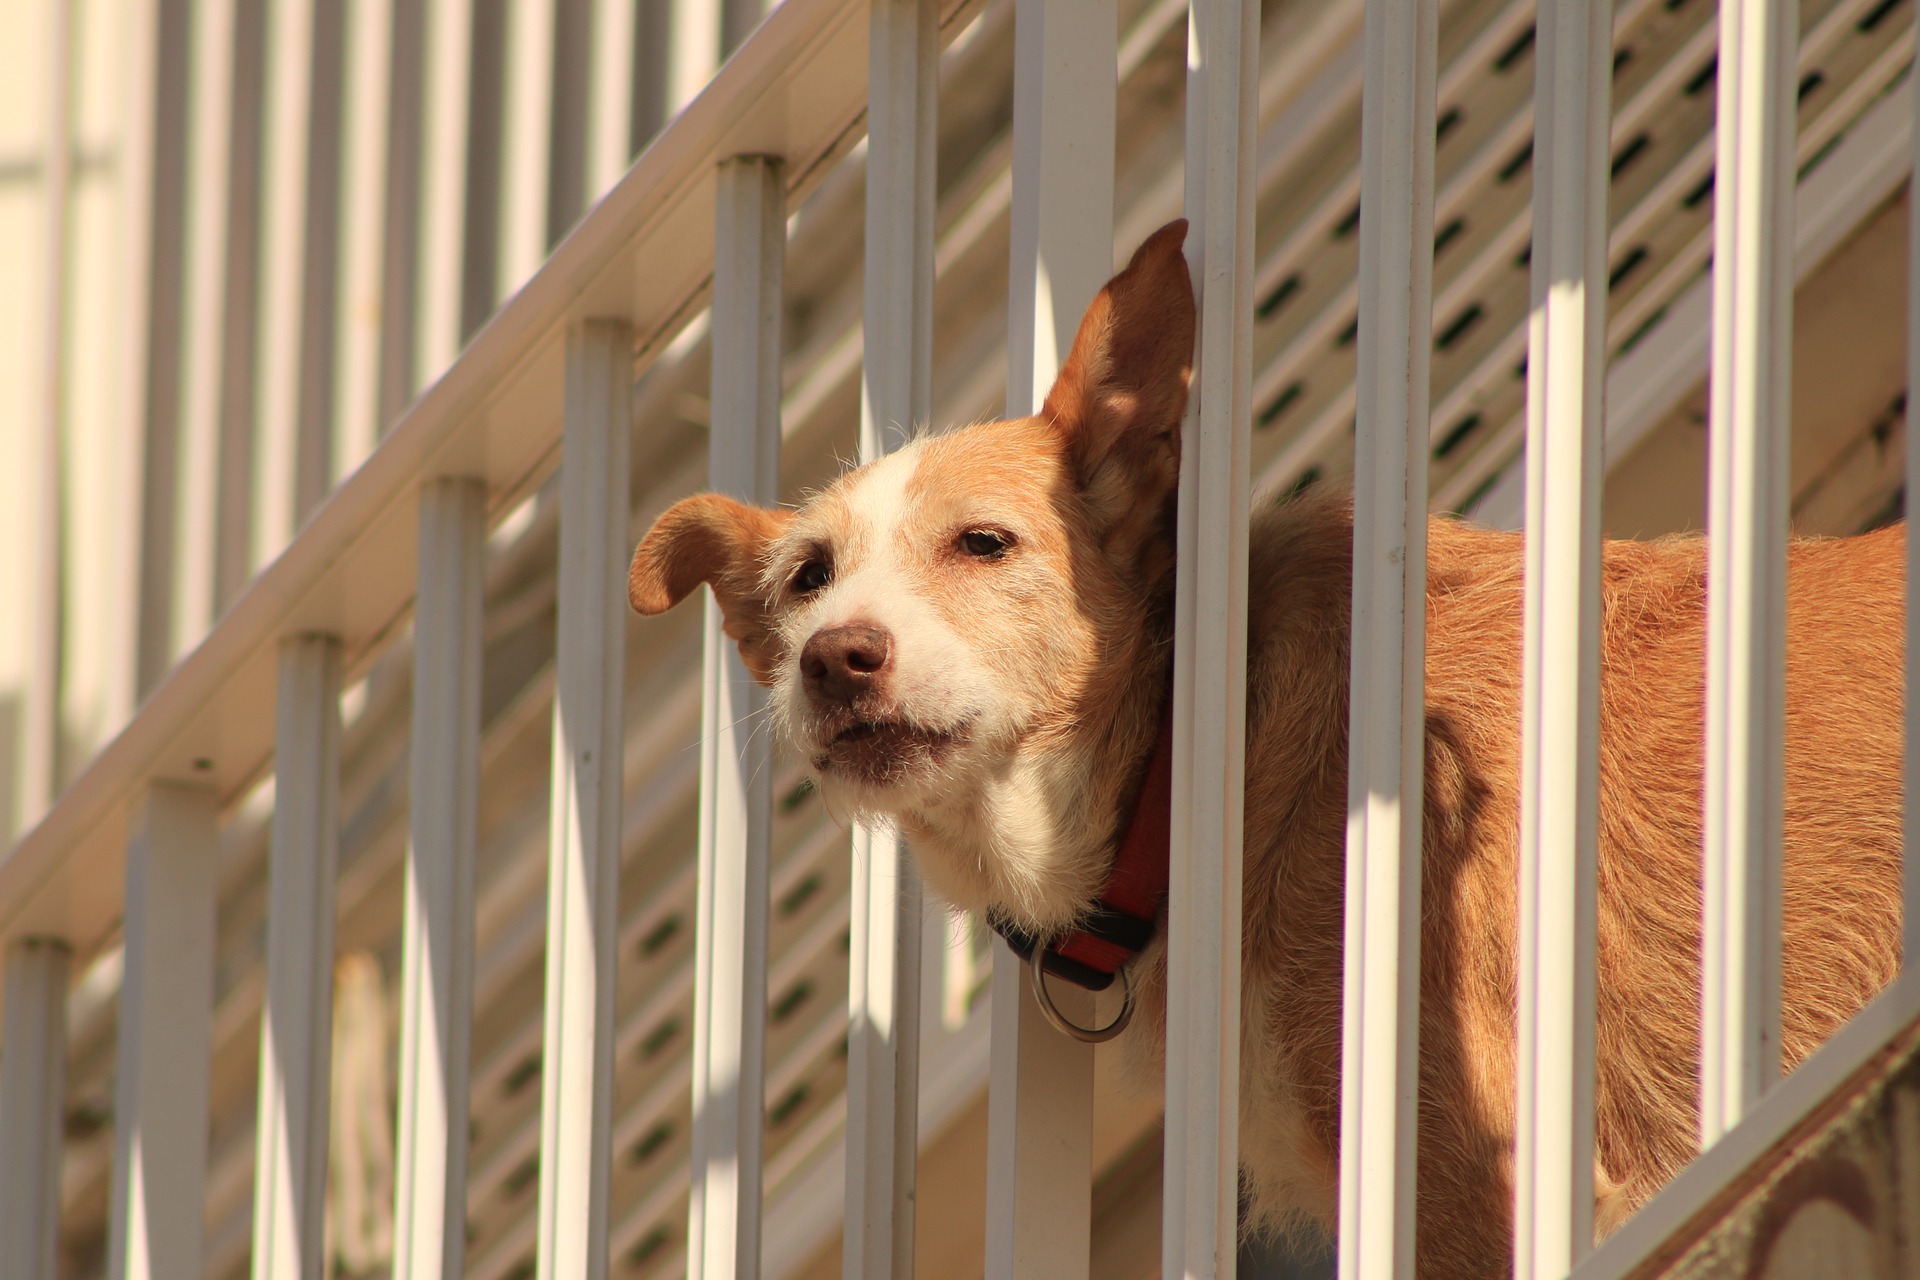 Σκυλί στο μπαλκόνι για 8 ώρες. Είναι παράνομο; (βίντεο)